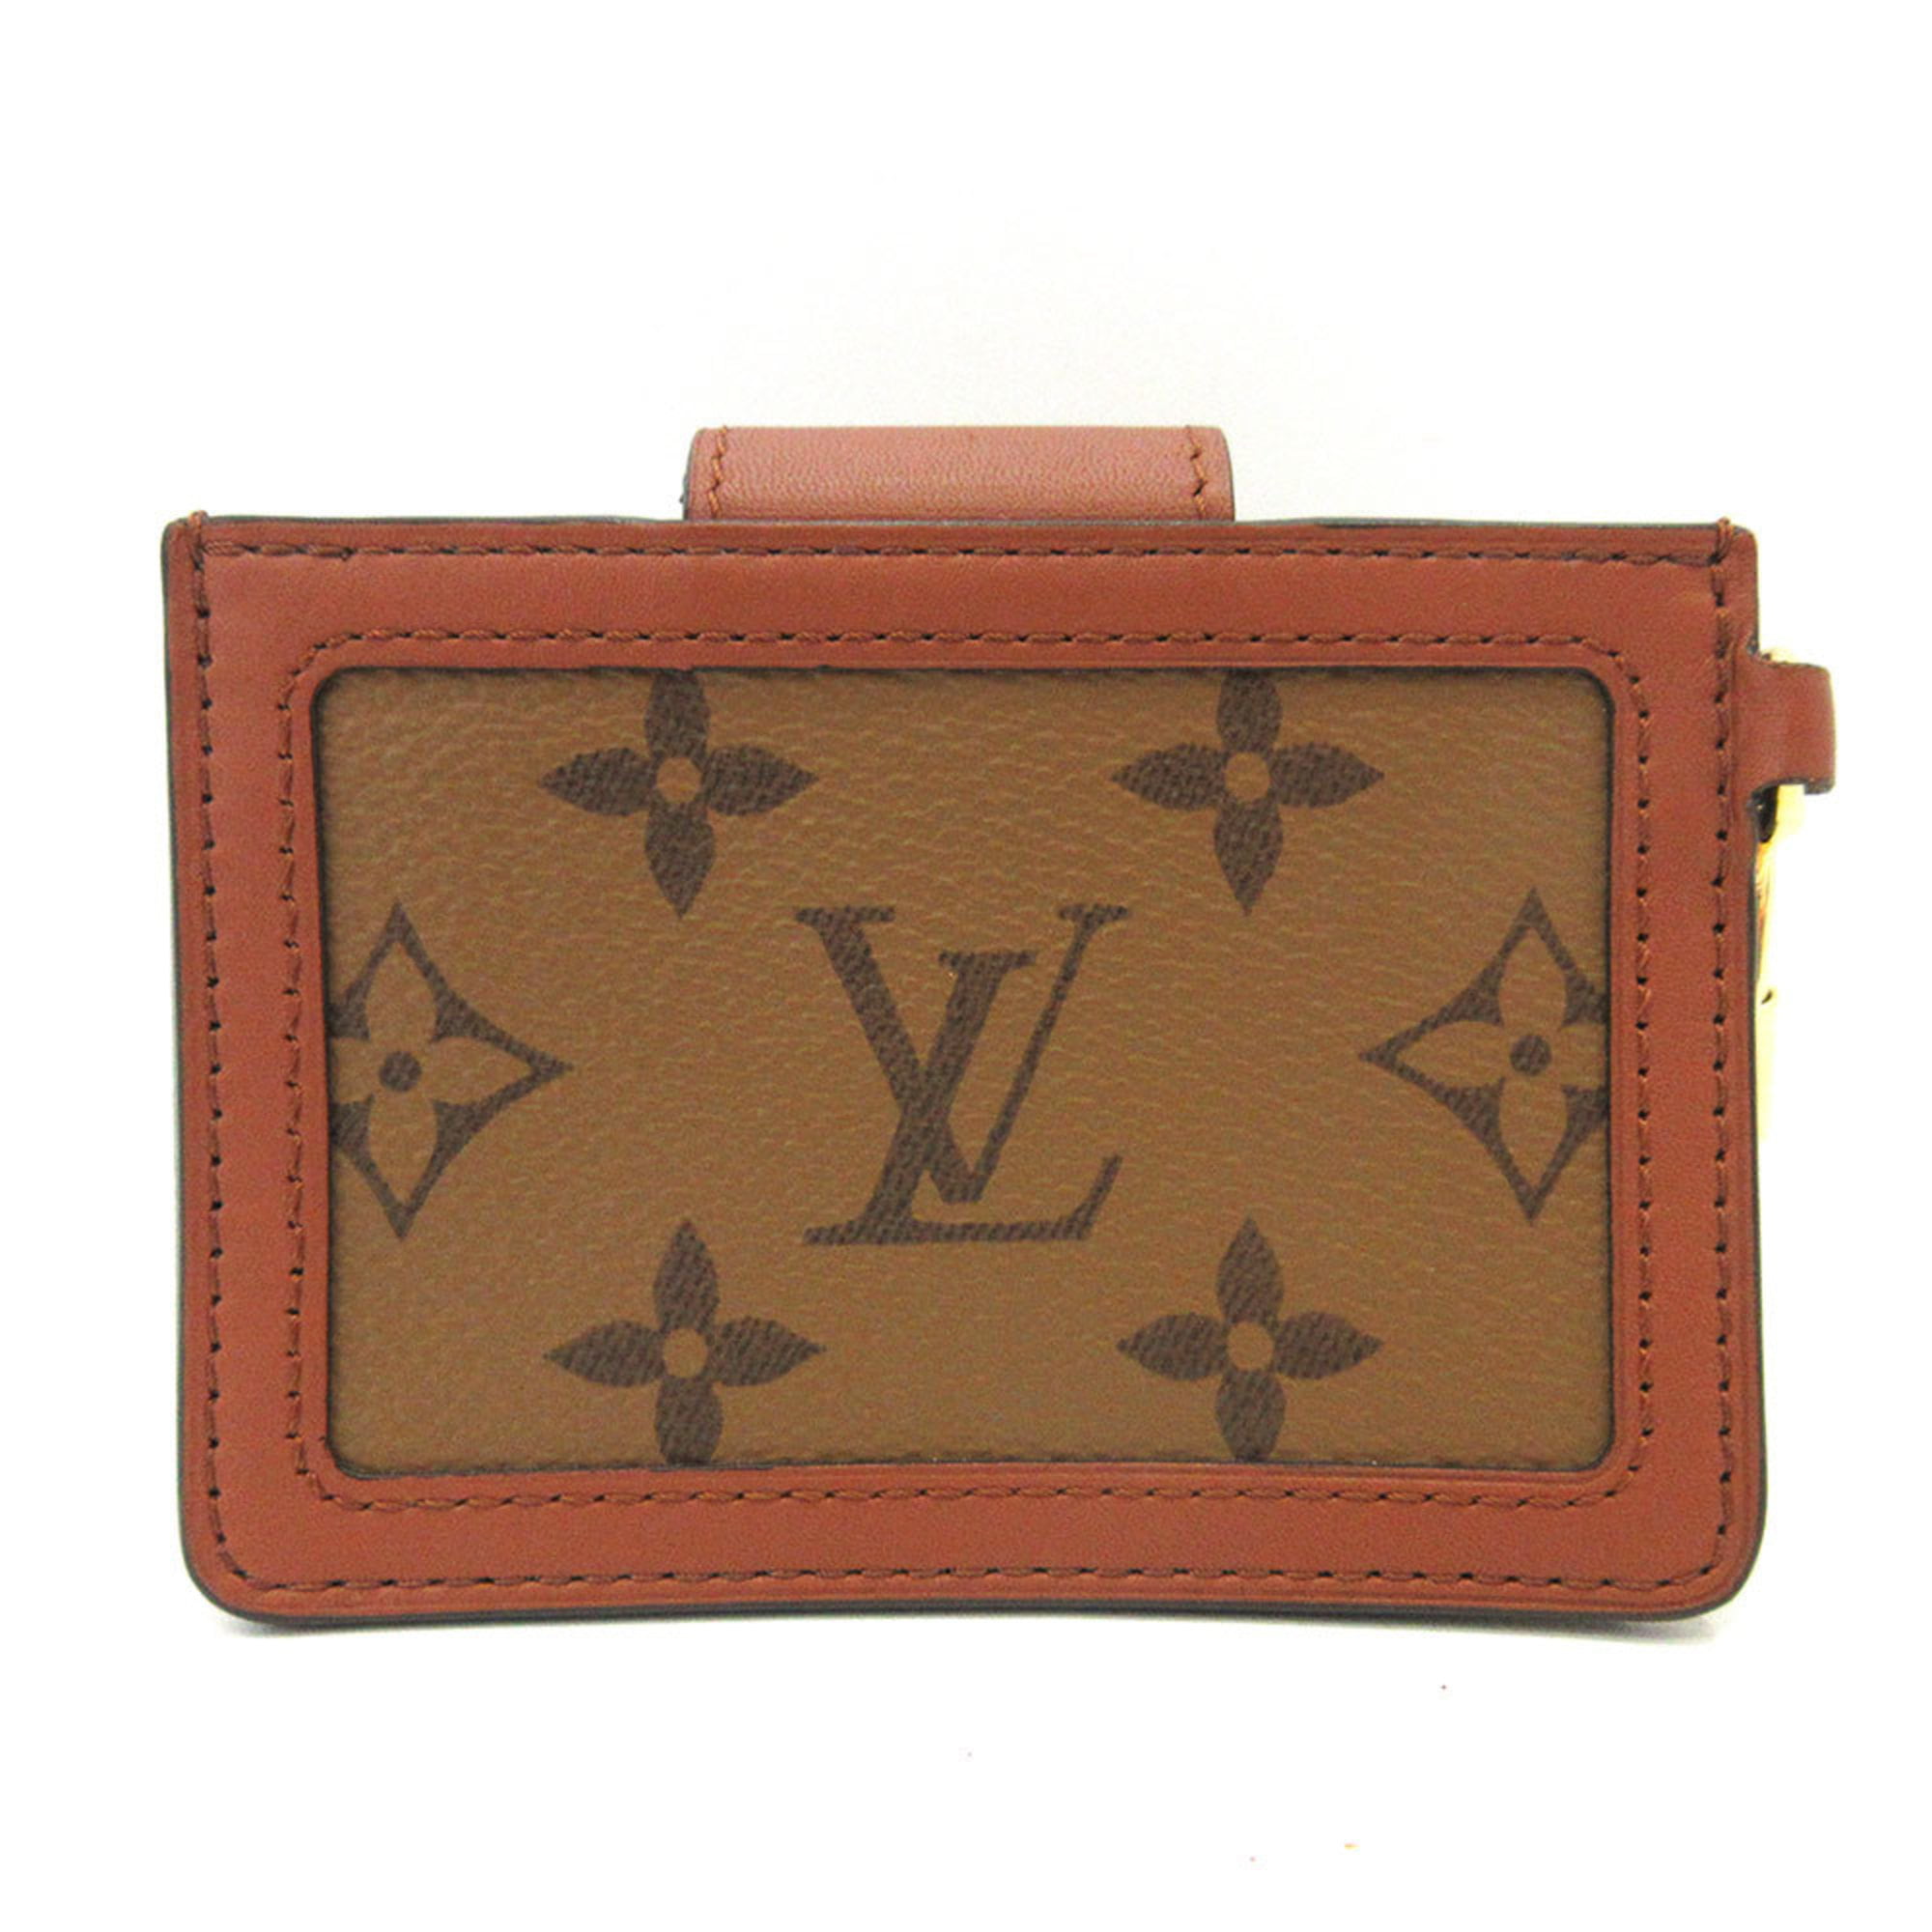 dauphine compact wallet monogram